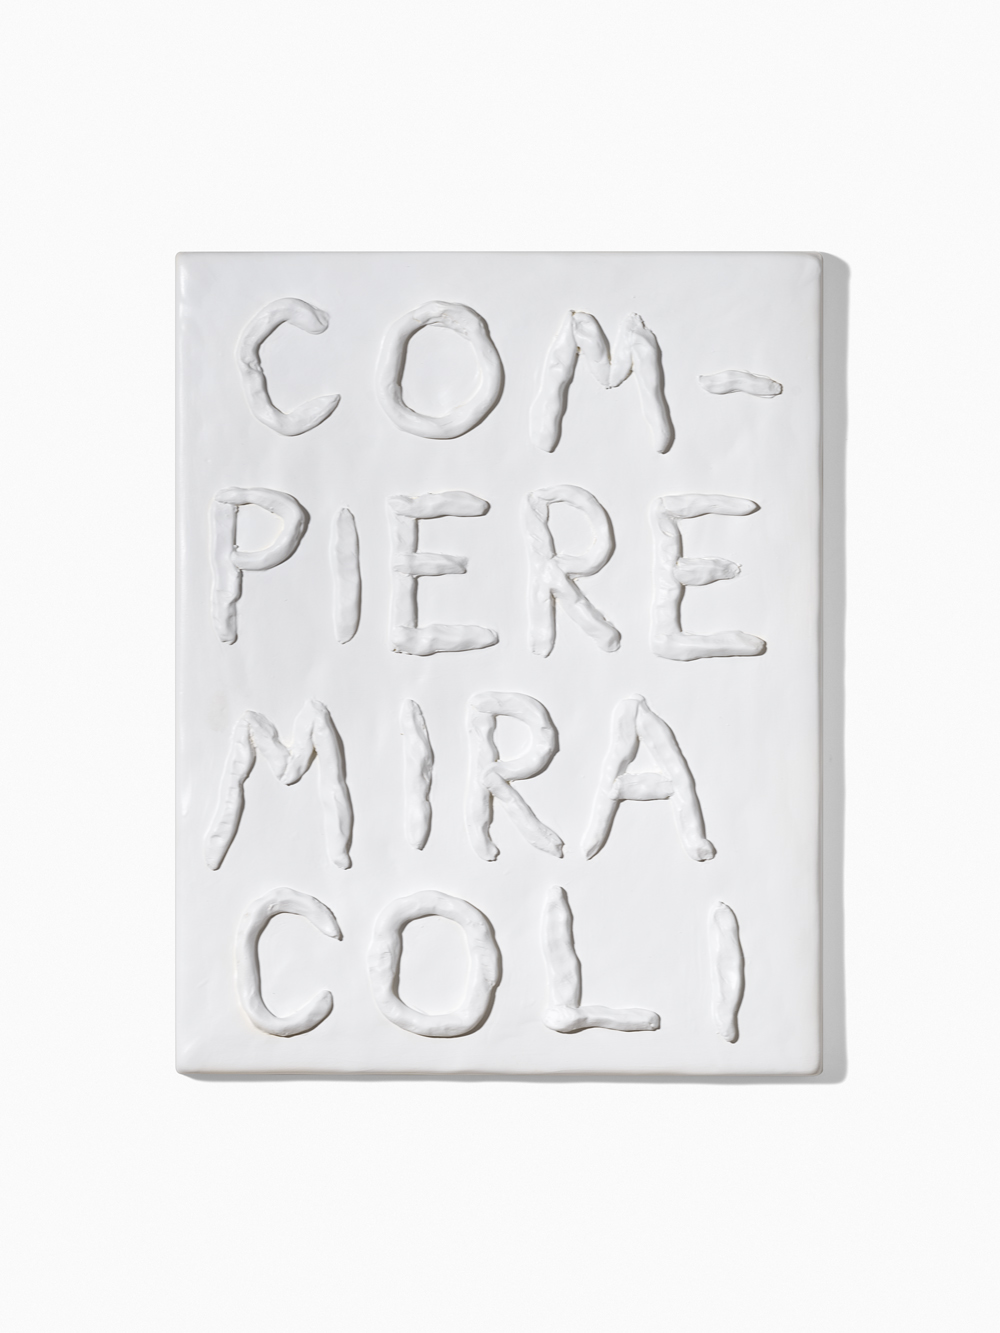 "Compiere miracoli" 2018, terracotta, 43 x 33 cm